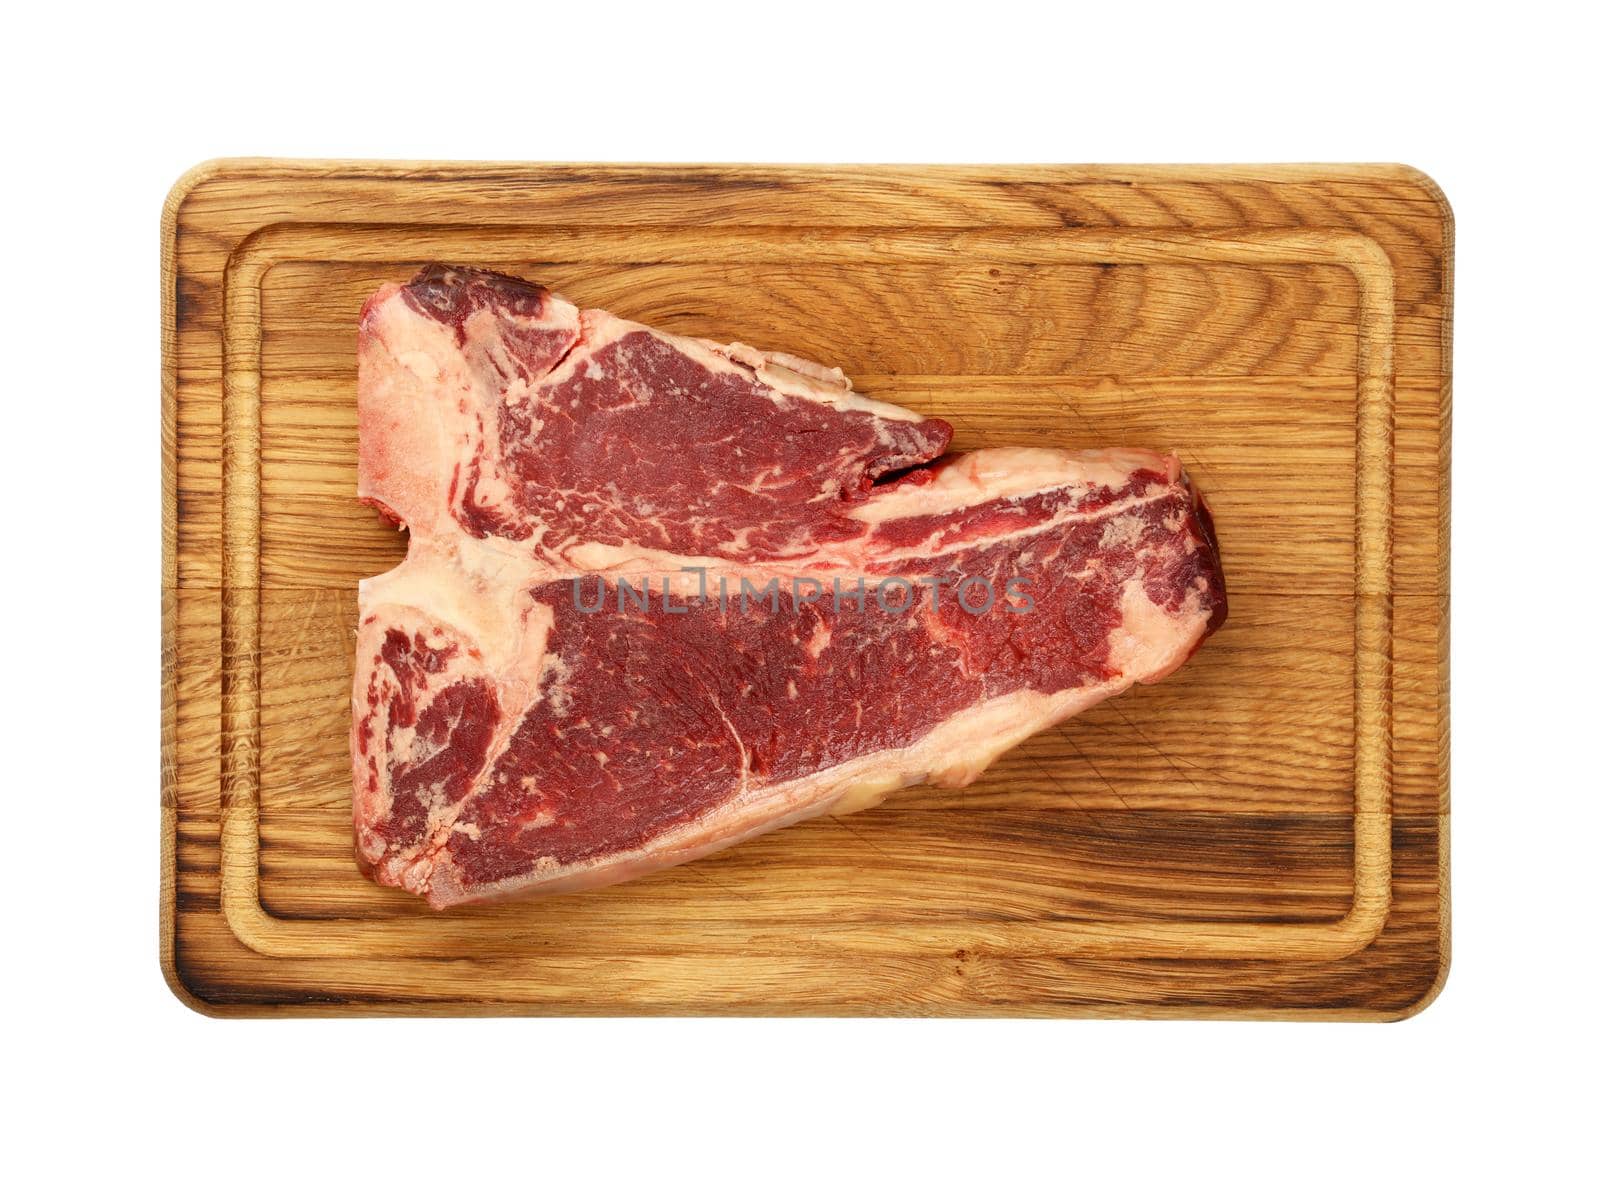 Close up raw beef T-bone steak on wooden board by BreakingTheWalls